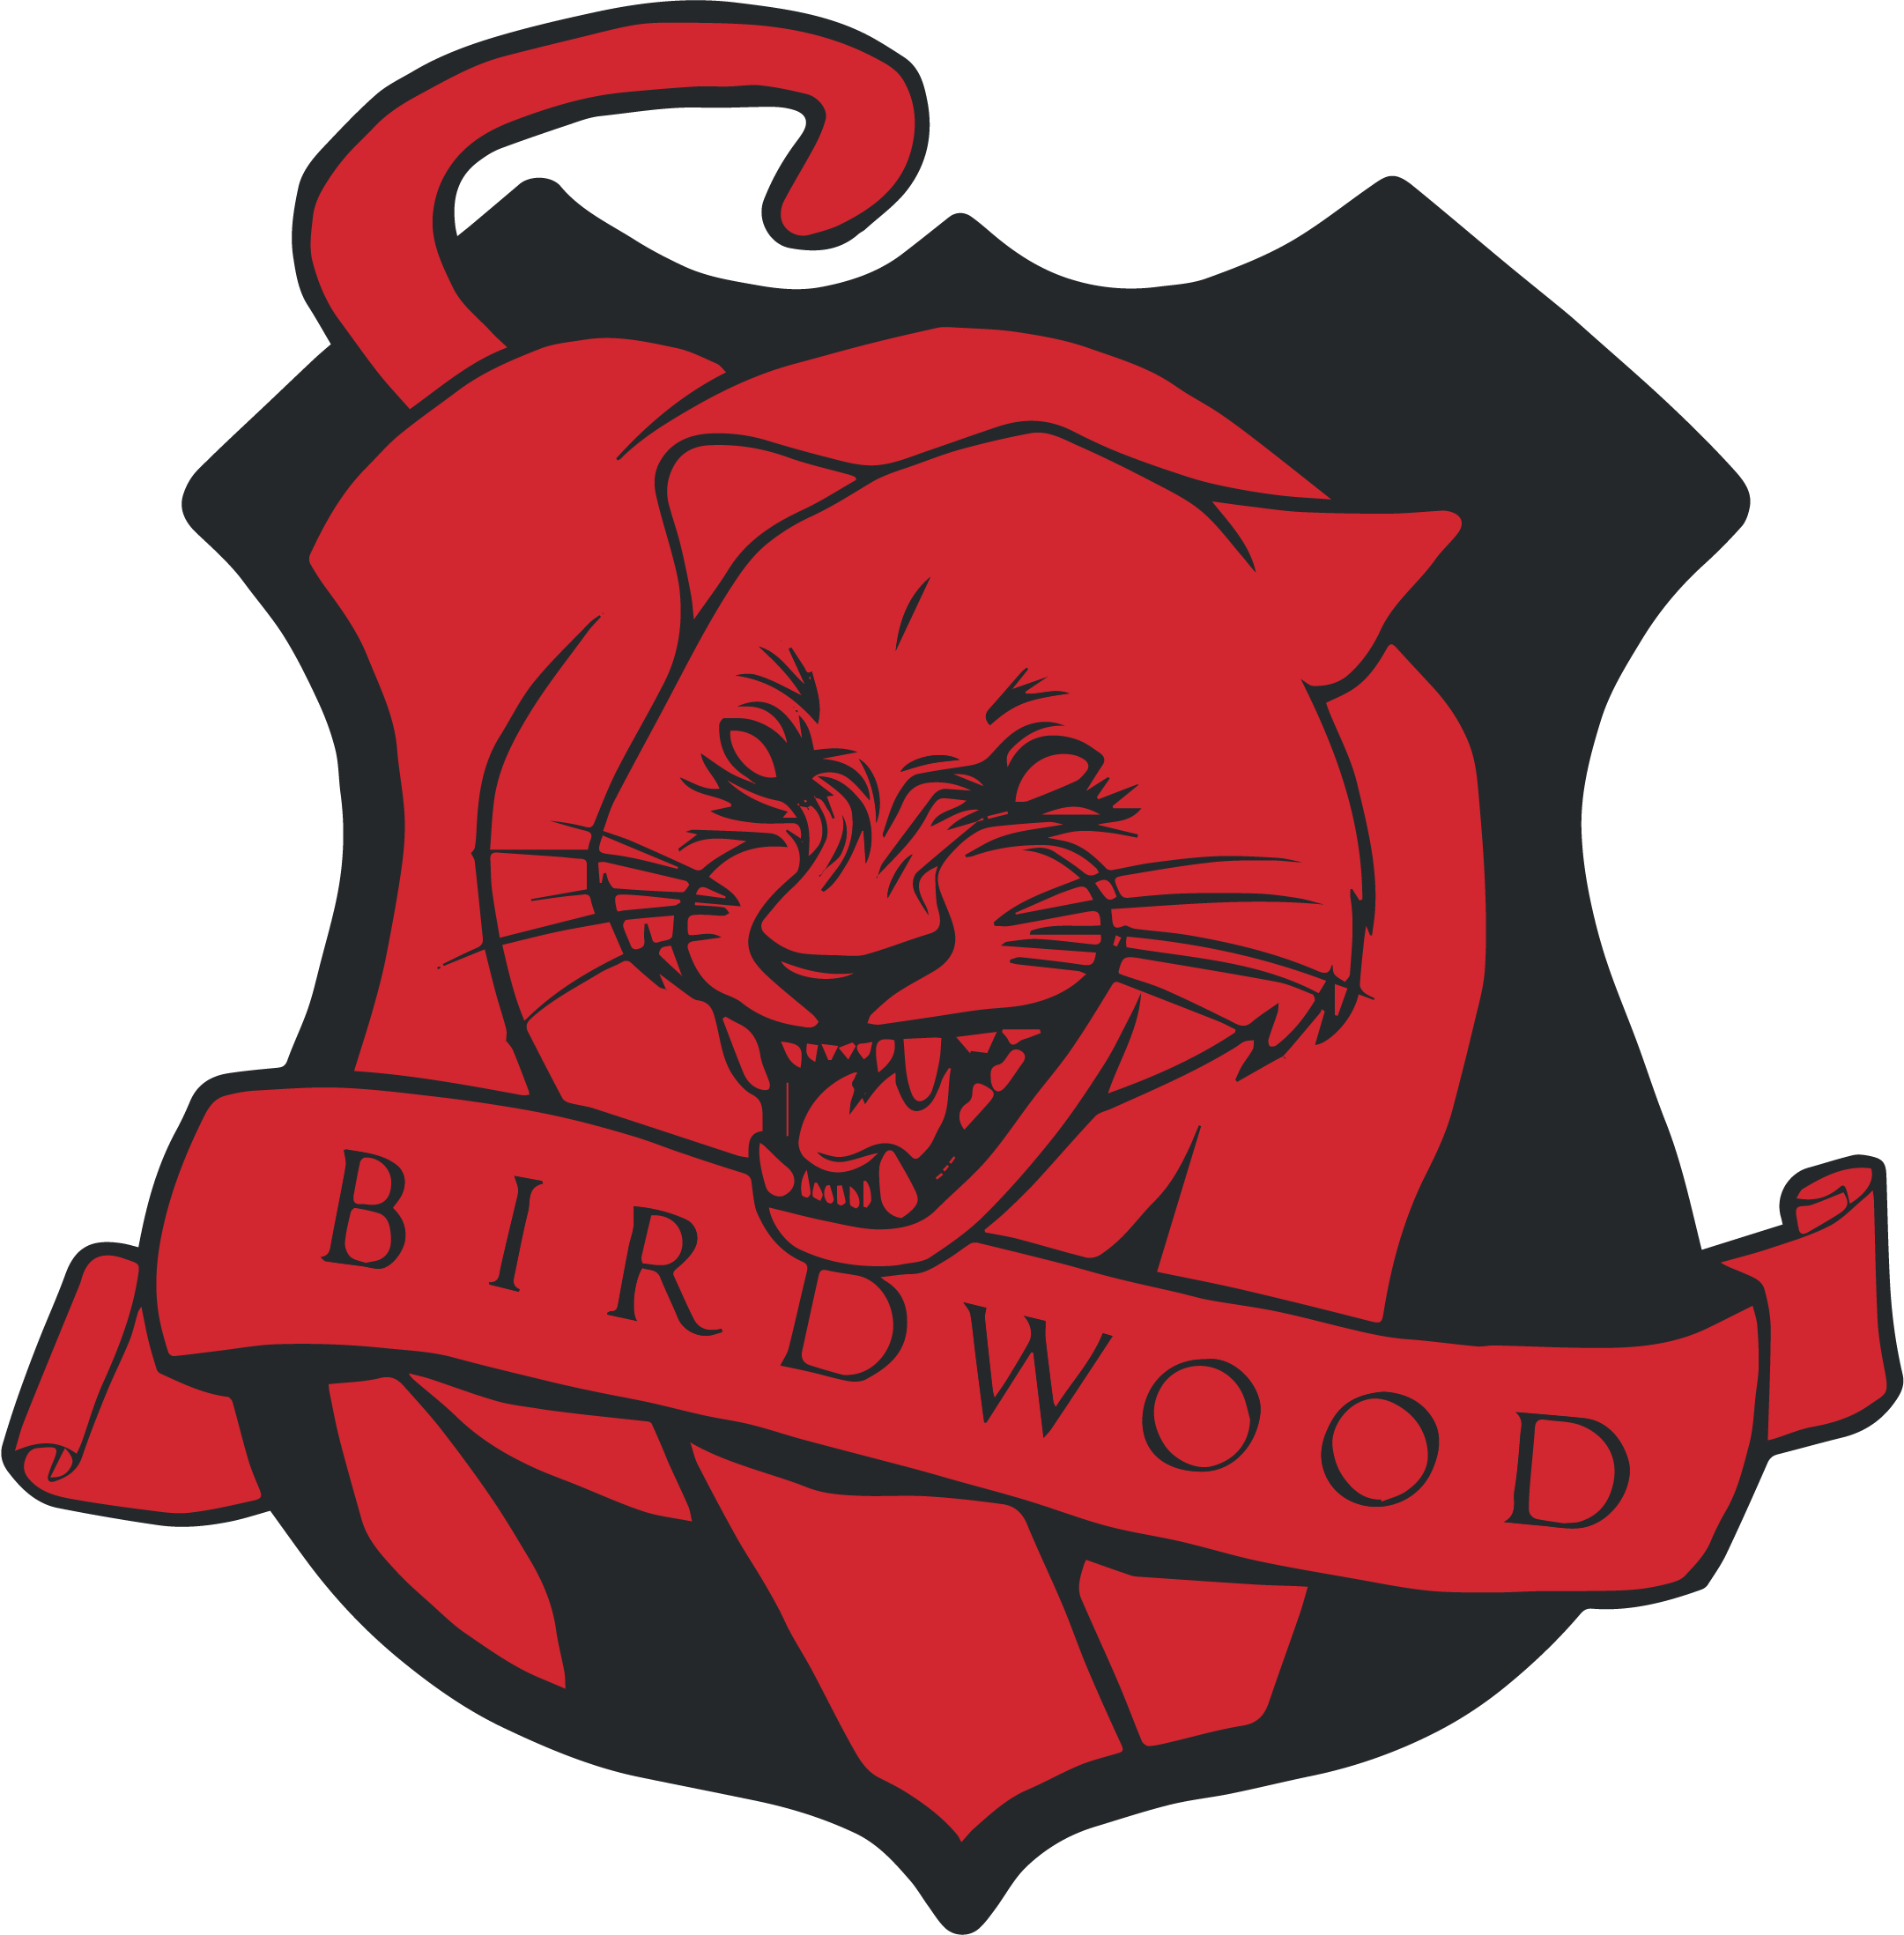 Birdwood emblem